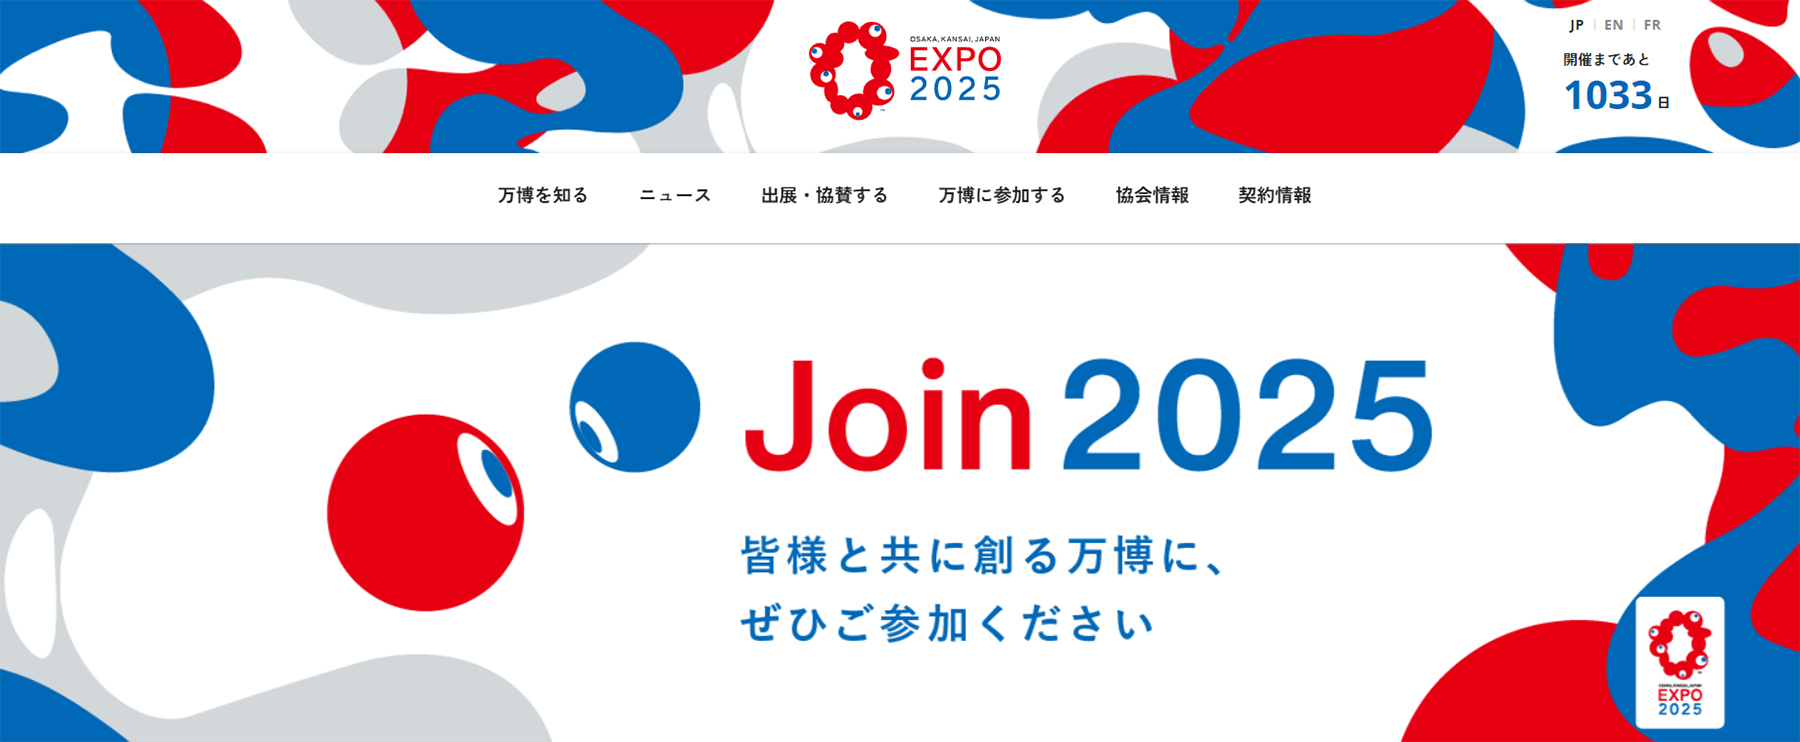 大阪万博、いのちの輝き、EXPO2025、エシカル、SDGs、サステナブル,オリジナルグッズ,企画,製作